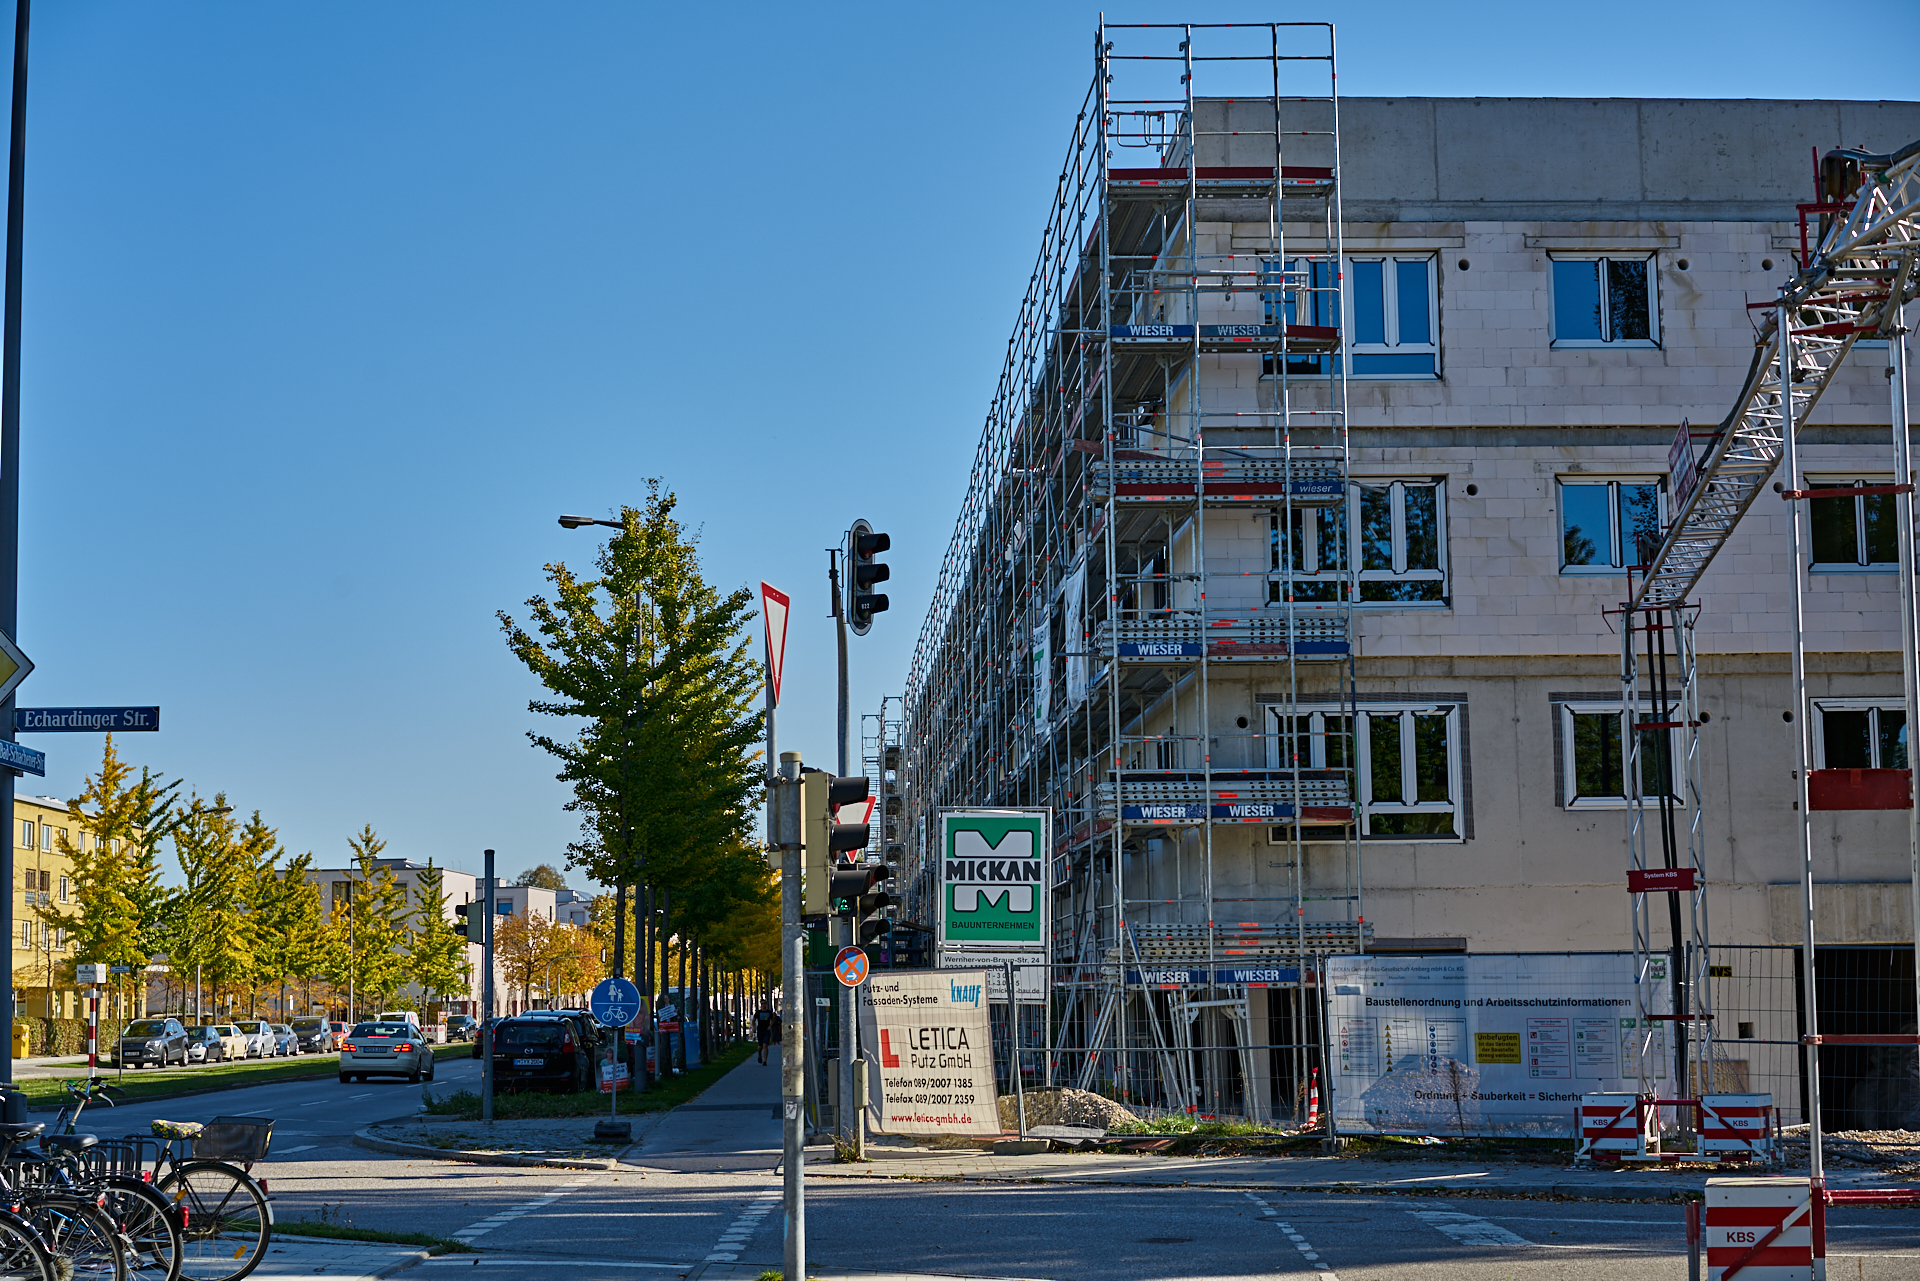 26.10.2018 - Baustelle Maikäfersiedlung in der Bad Schachener Straße in Neuperlach